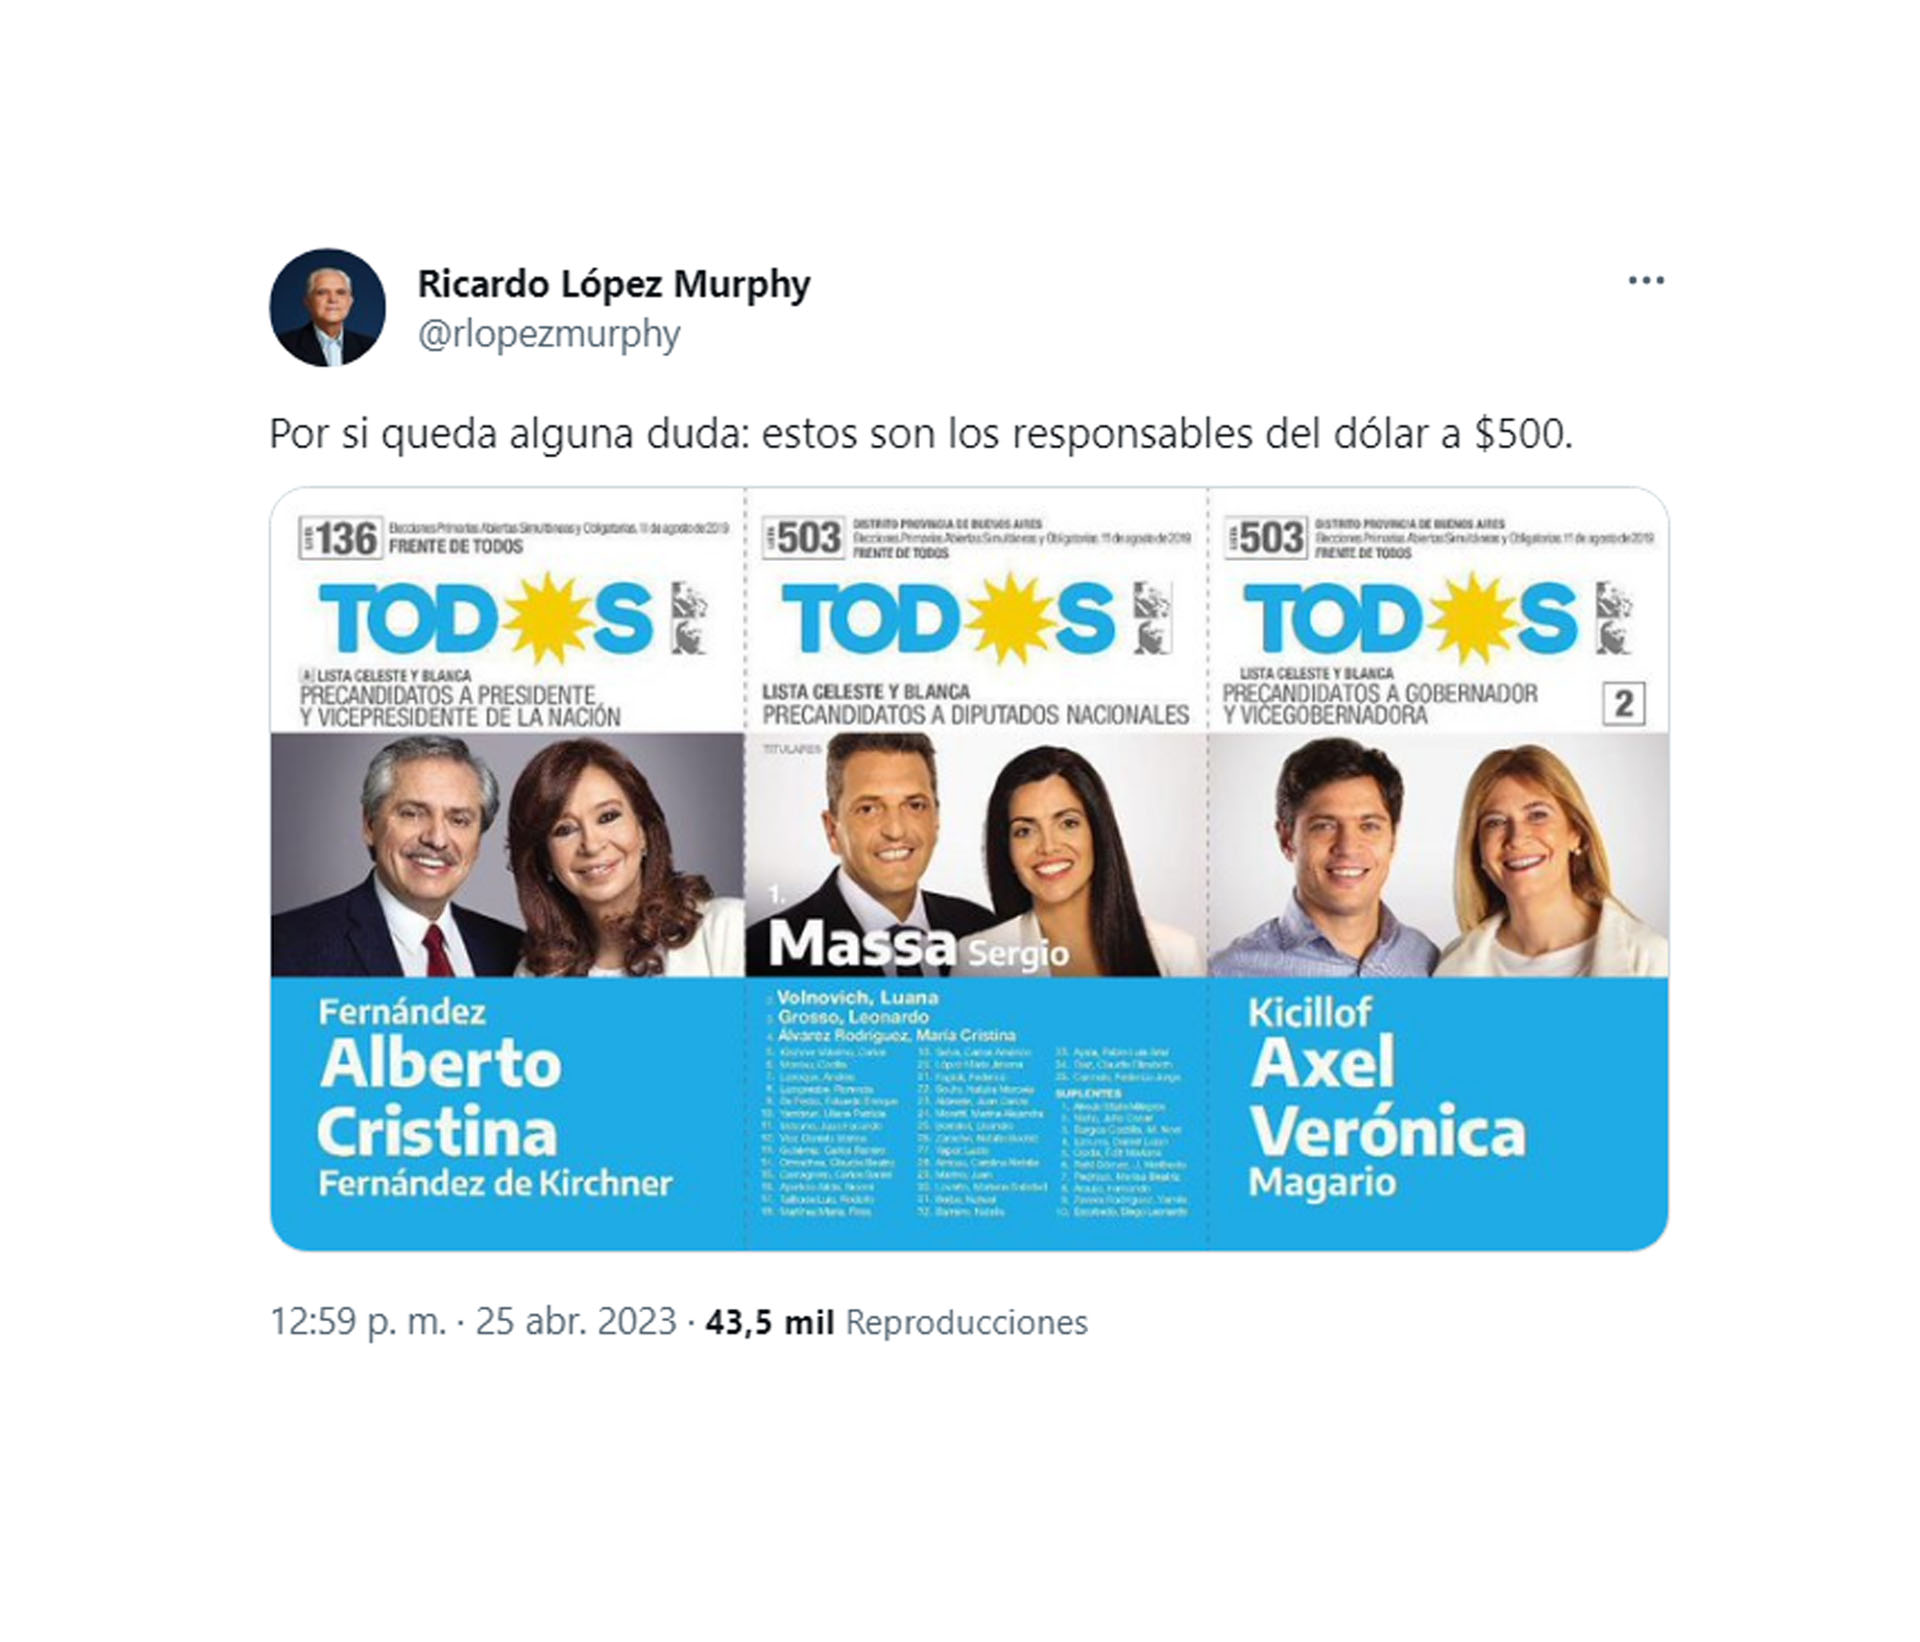 La publicación de Ricardo López Murphy, a tono con la campaña electoral